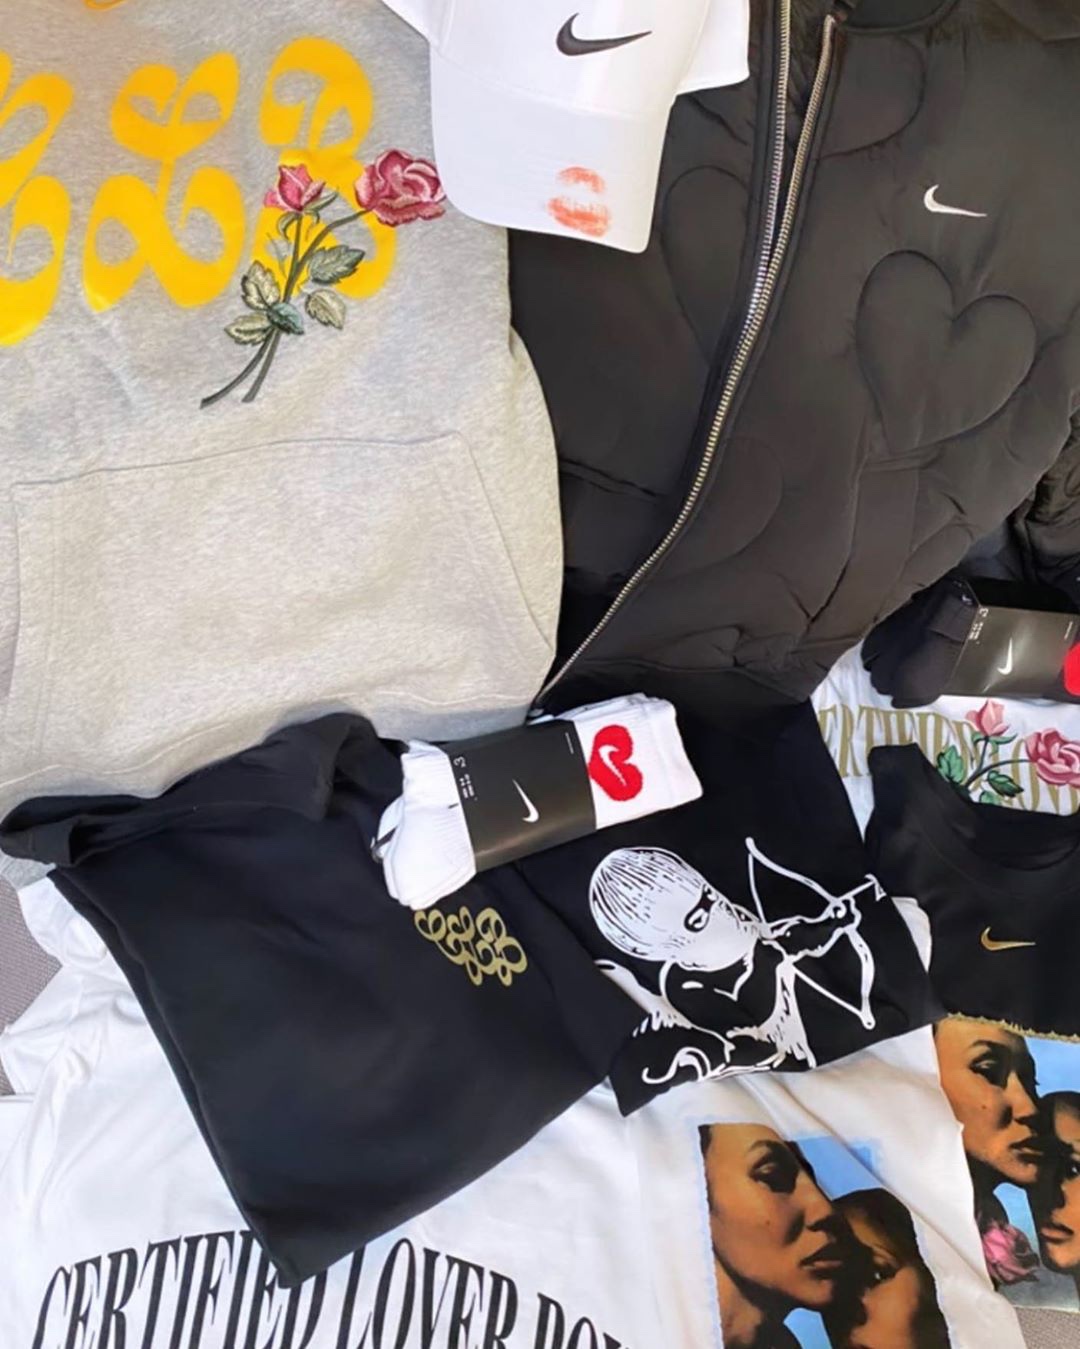 Drake Nike Certifed Lover Boy apparel